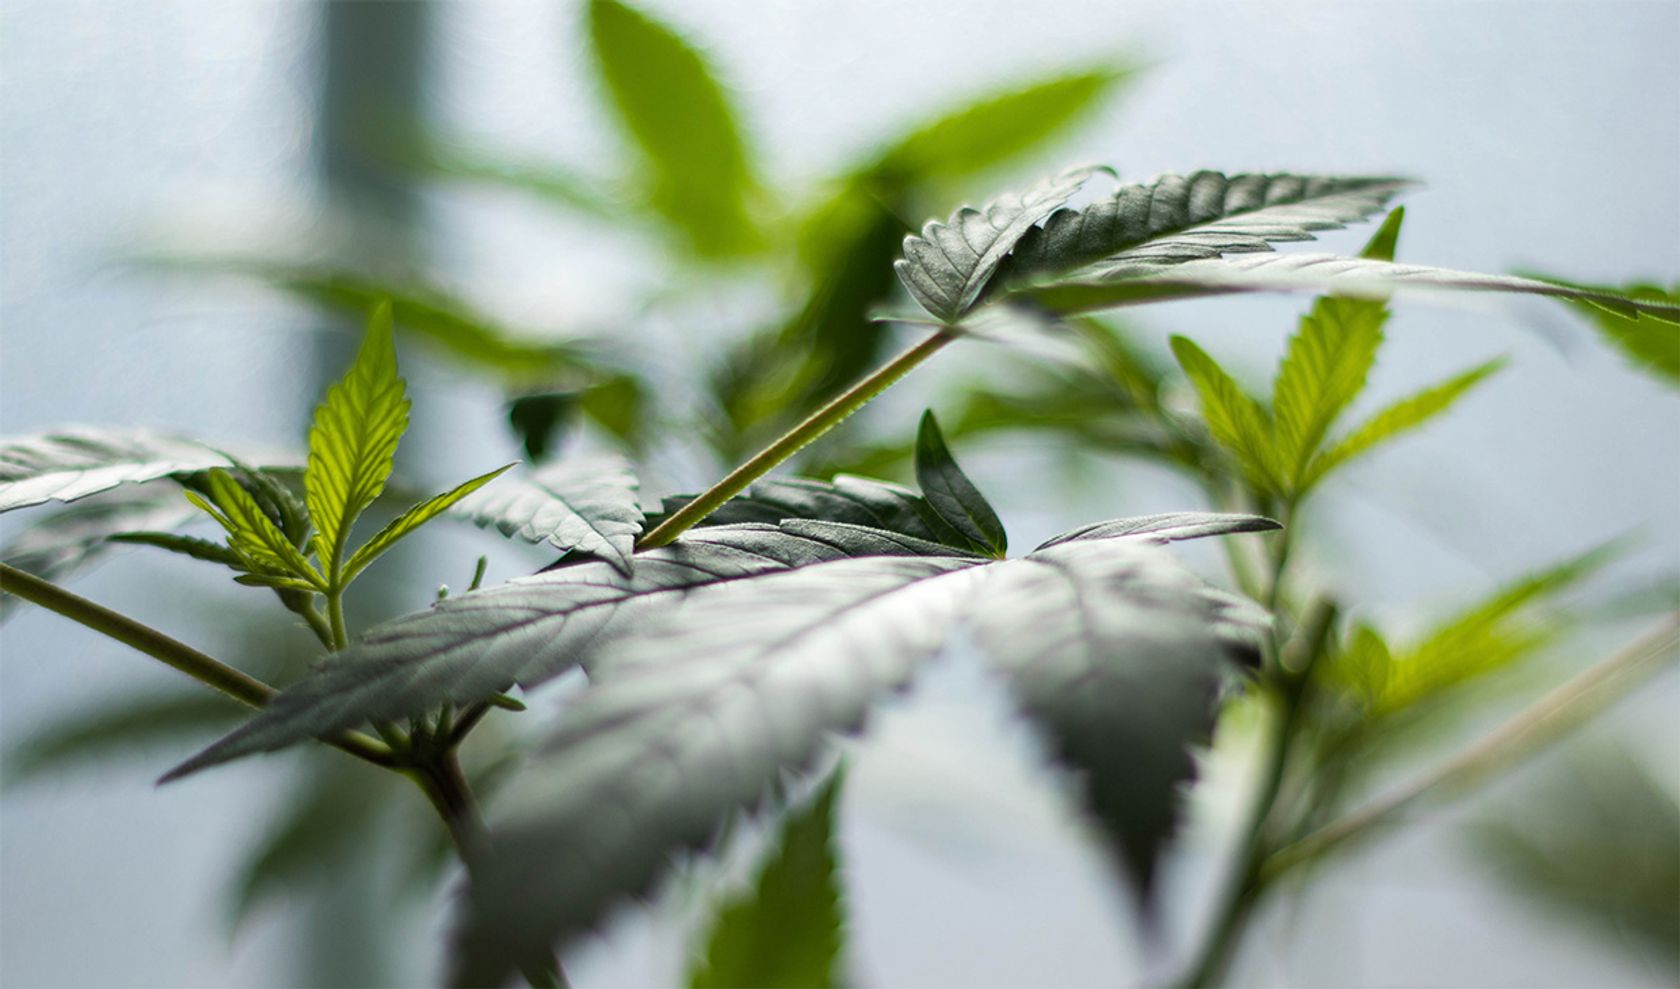 Cannabiskonsumstörung erkennen: Die Cannabis-Pflanze